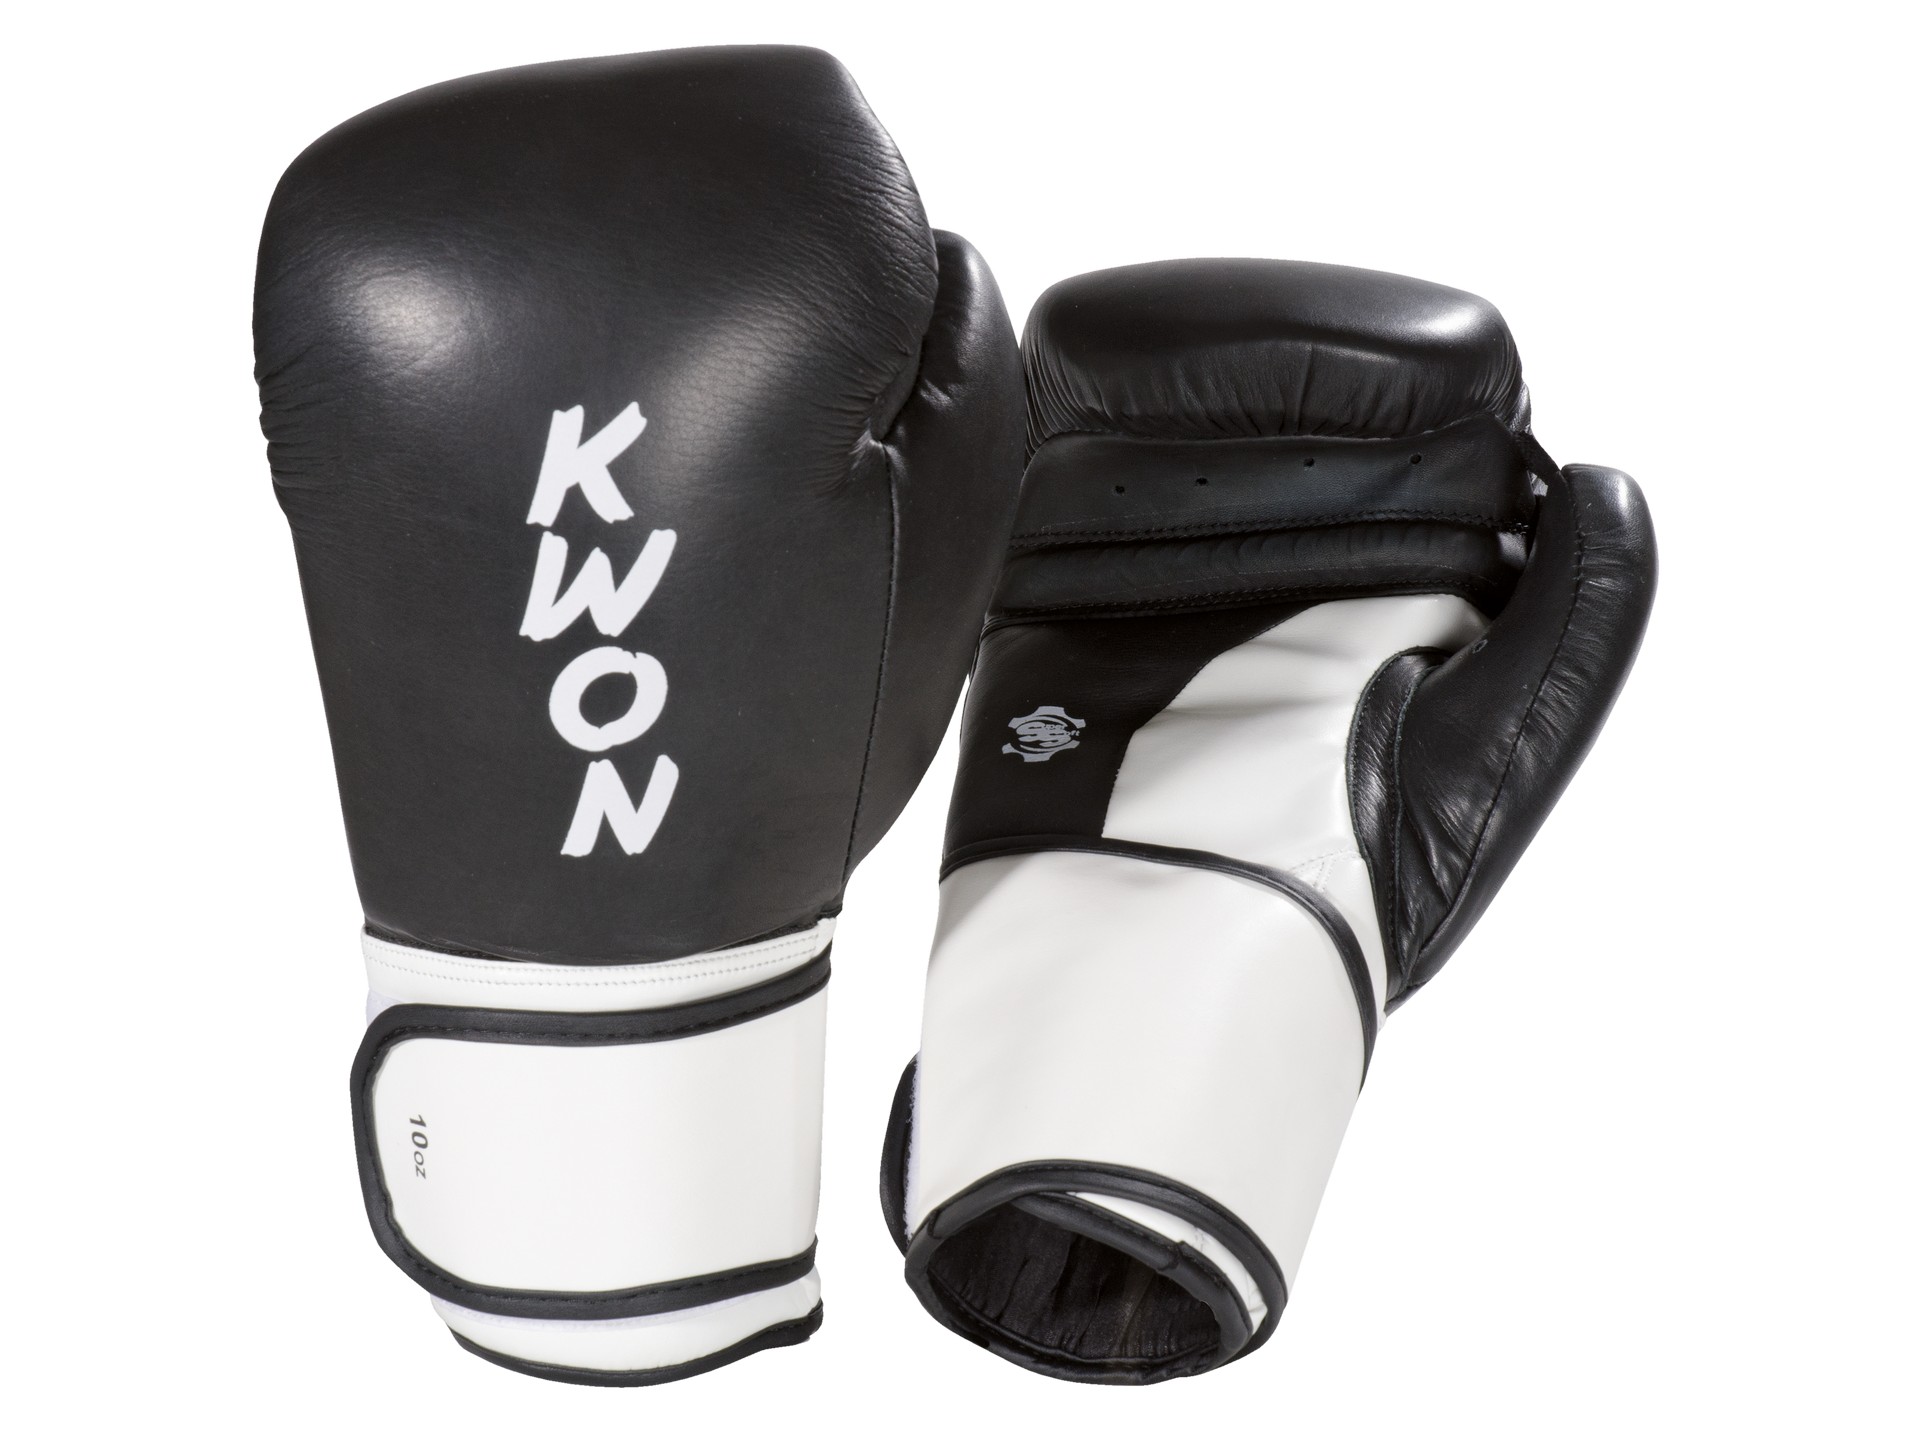 KWON Boxhandschuhe Super Champ anerkannt Thai | WKU Kickboxen Boxen - Wettkampfhandschuhe 